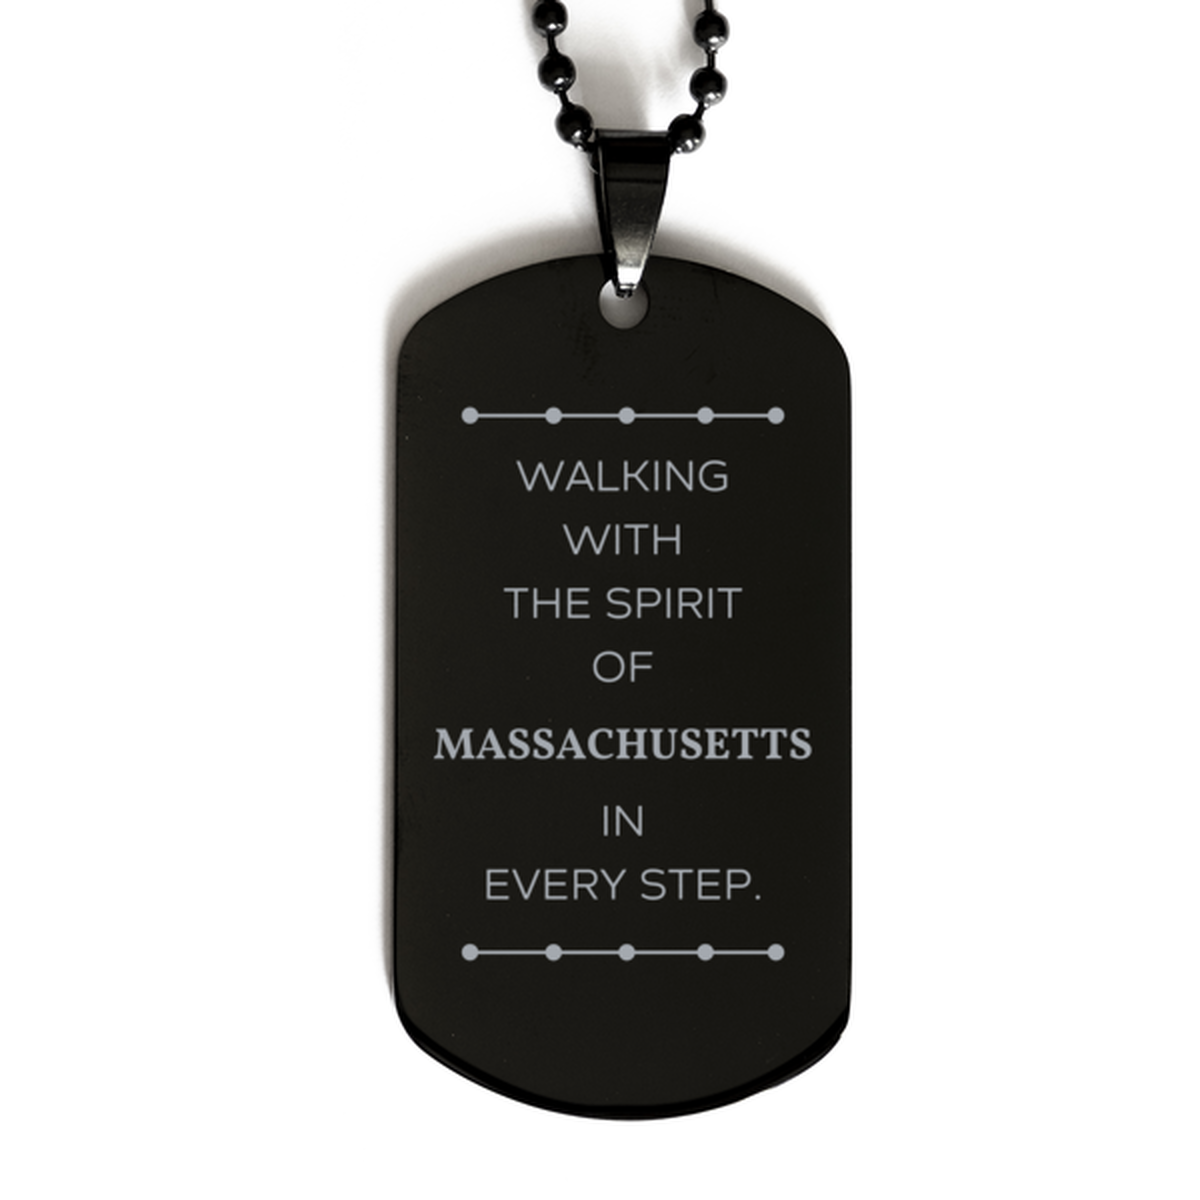 Massachusetts Gifts, Walking with the spirit, Love Massachusetts Birthday Christmas Black Dog Tag For Massachusetts People, Men, Women, Friends